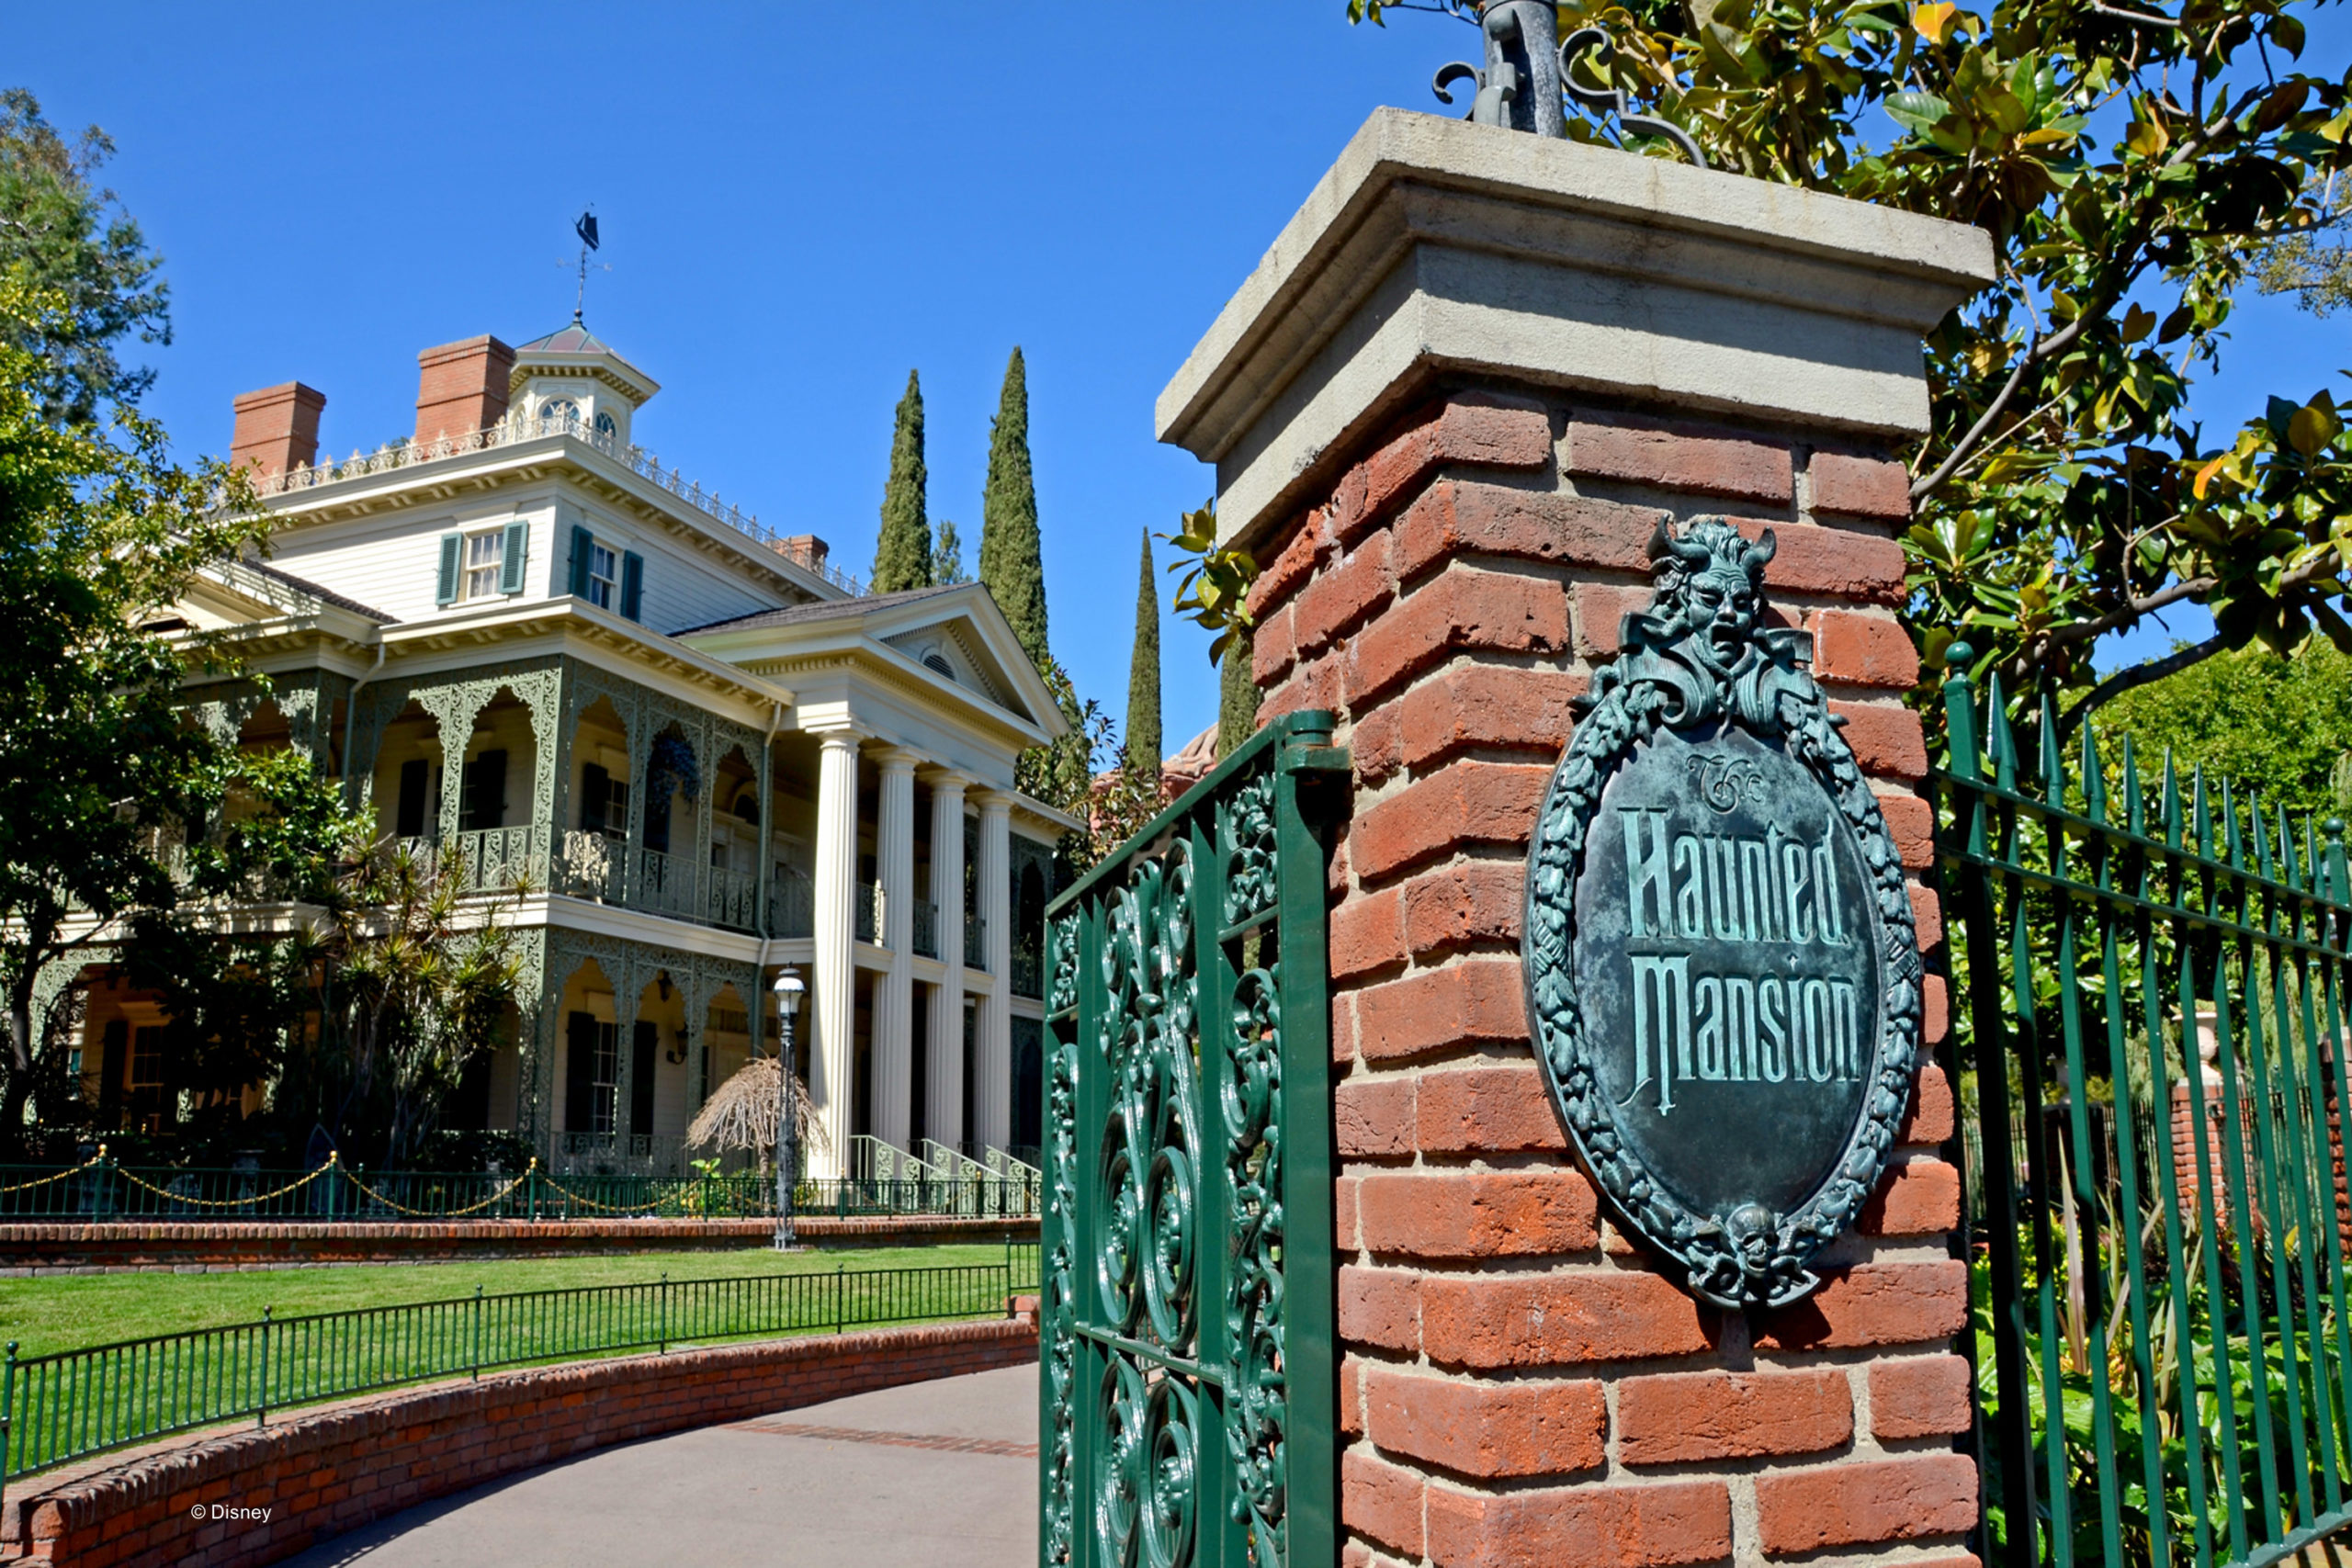 Owen Wilson will Star in Disney’s Haunted Mansion